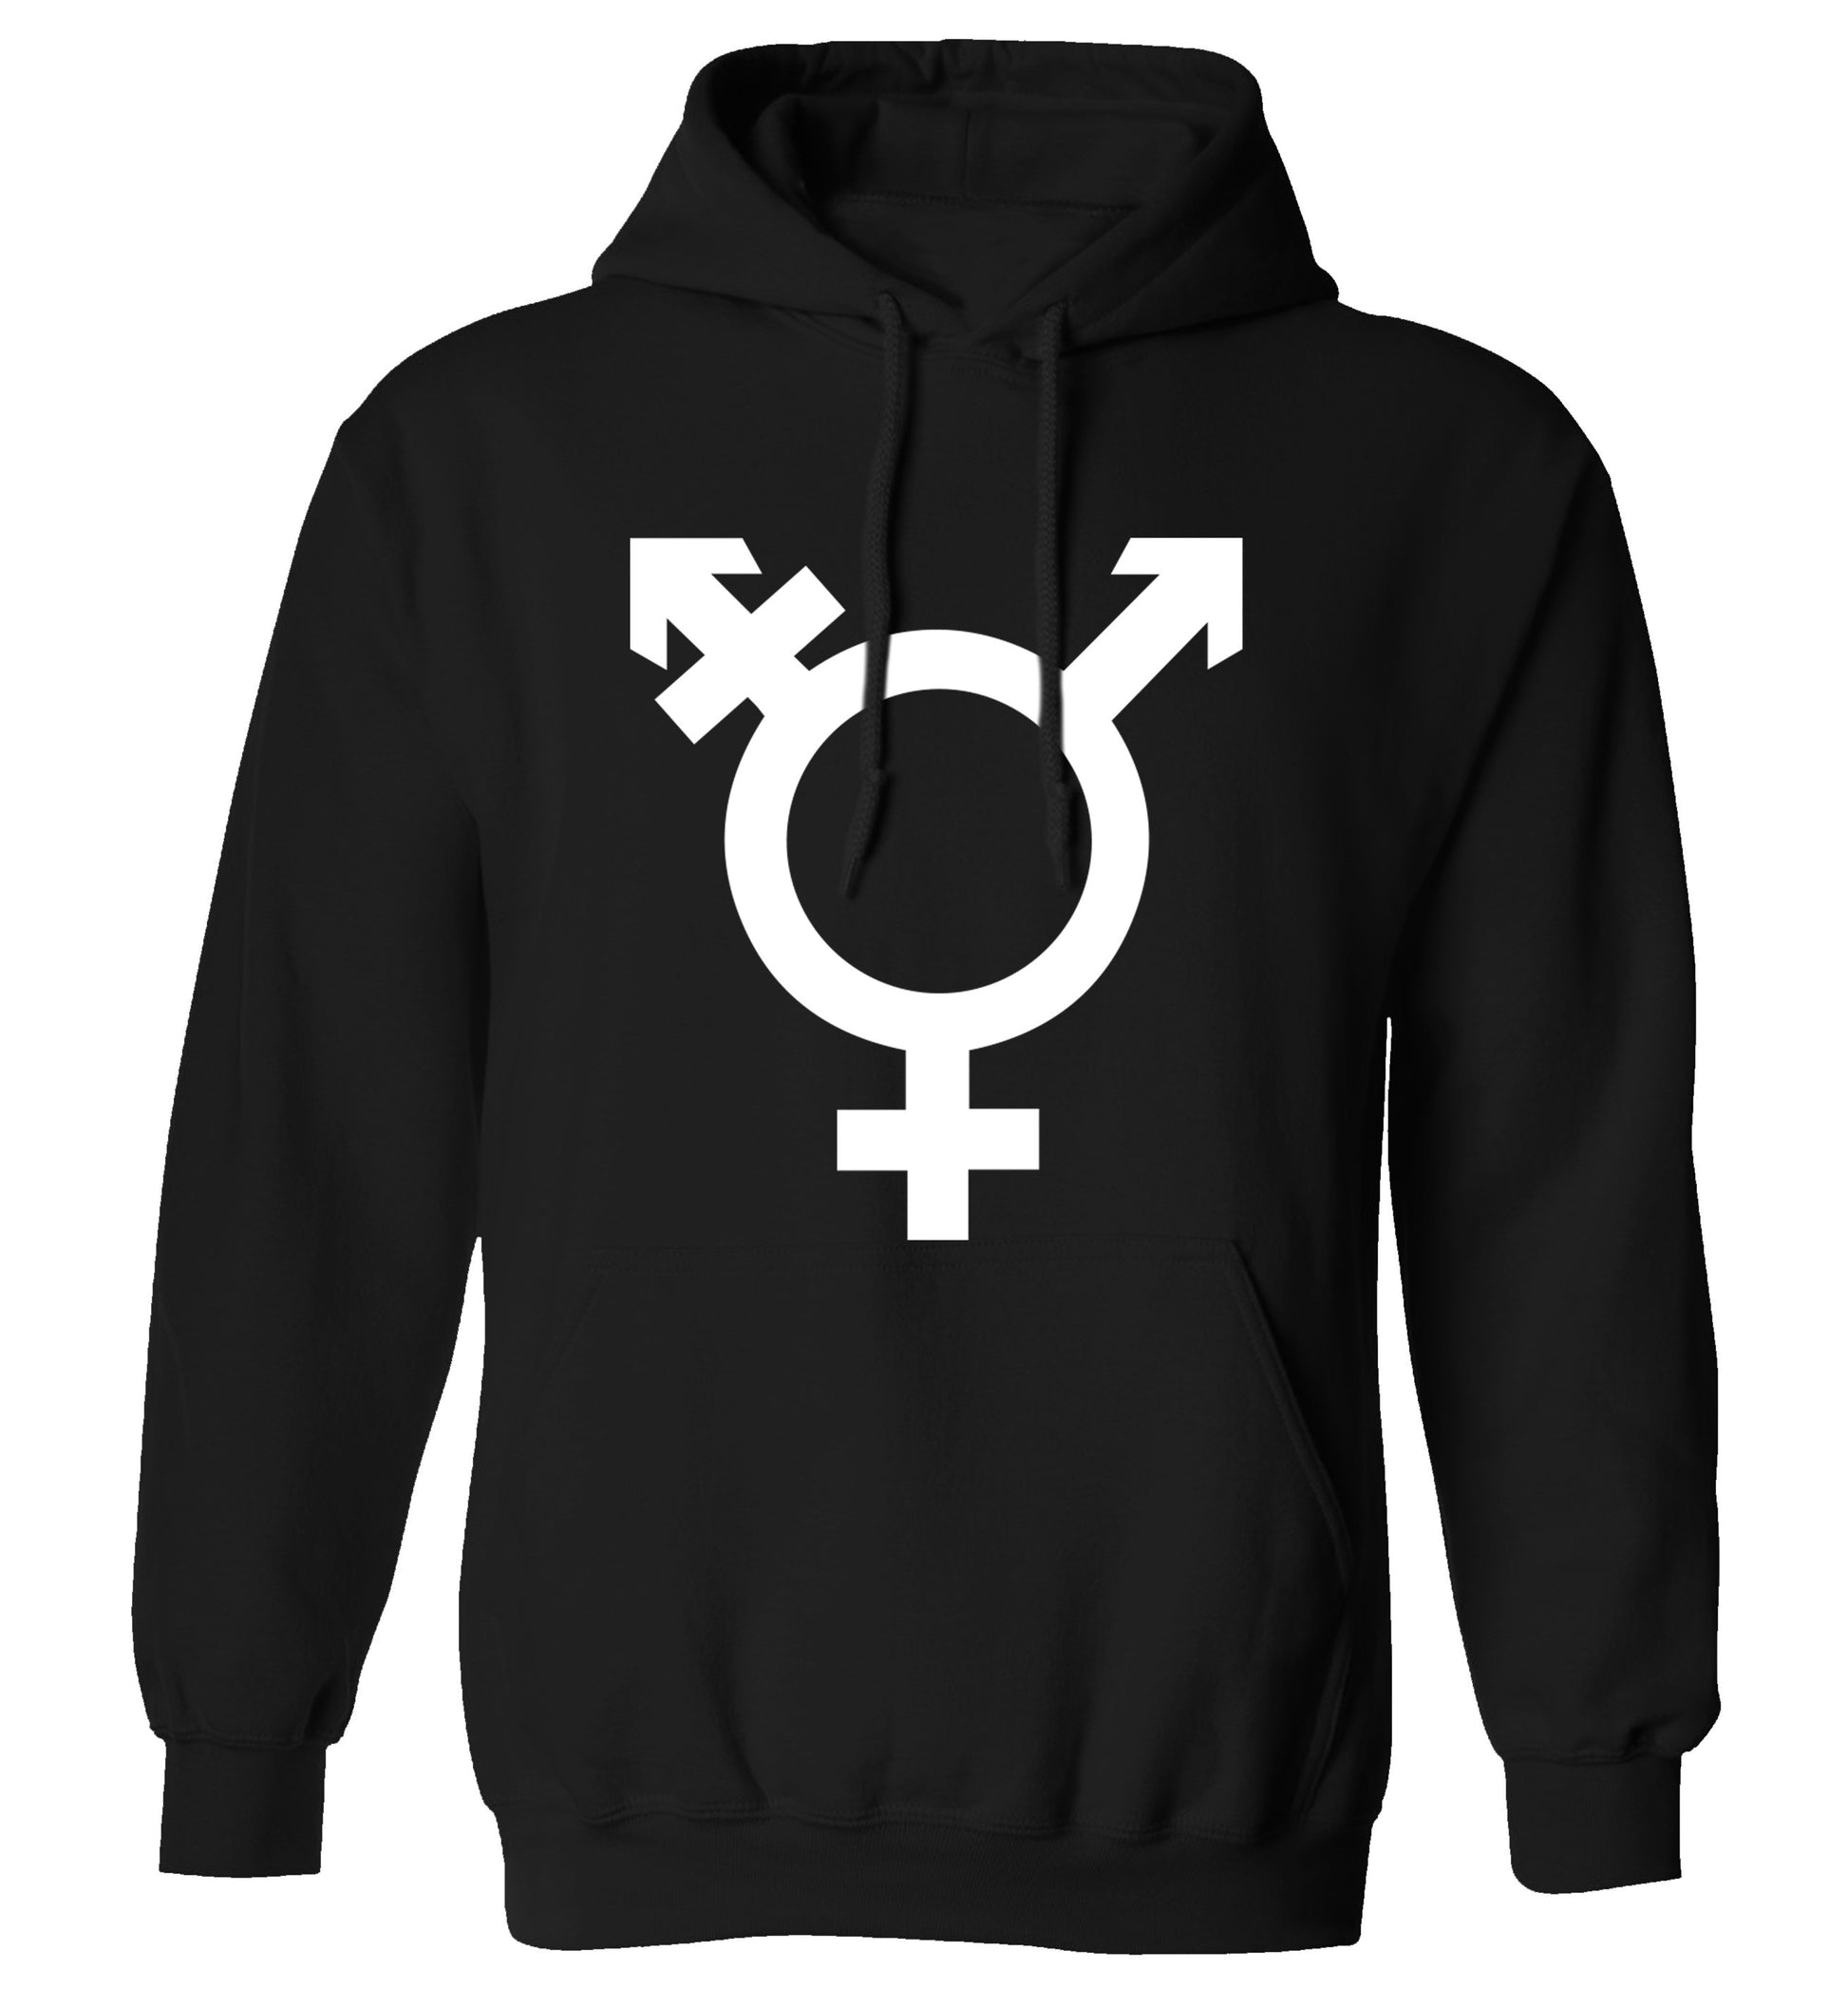 Gender neutral symbol large adults unisex black hoodie 2XL